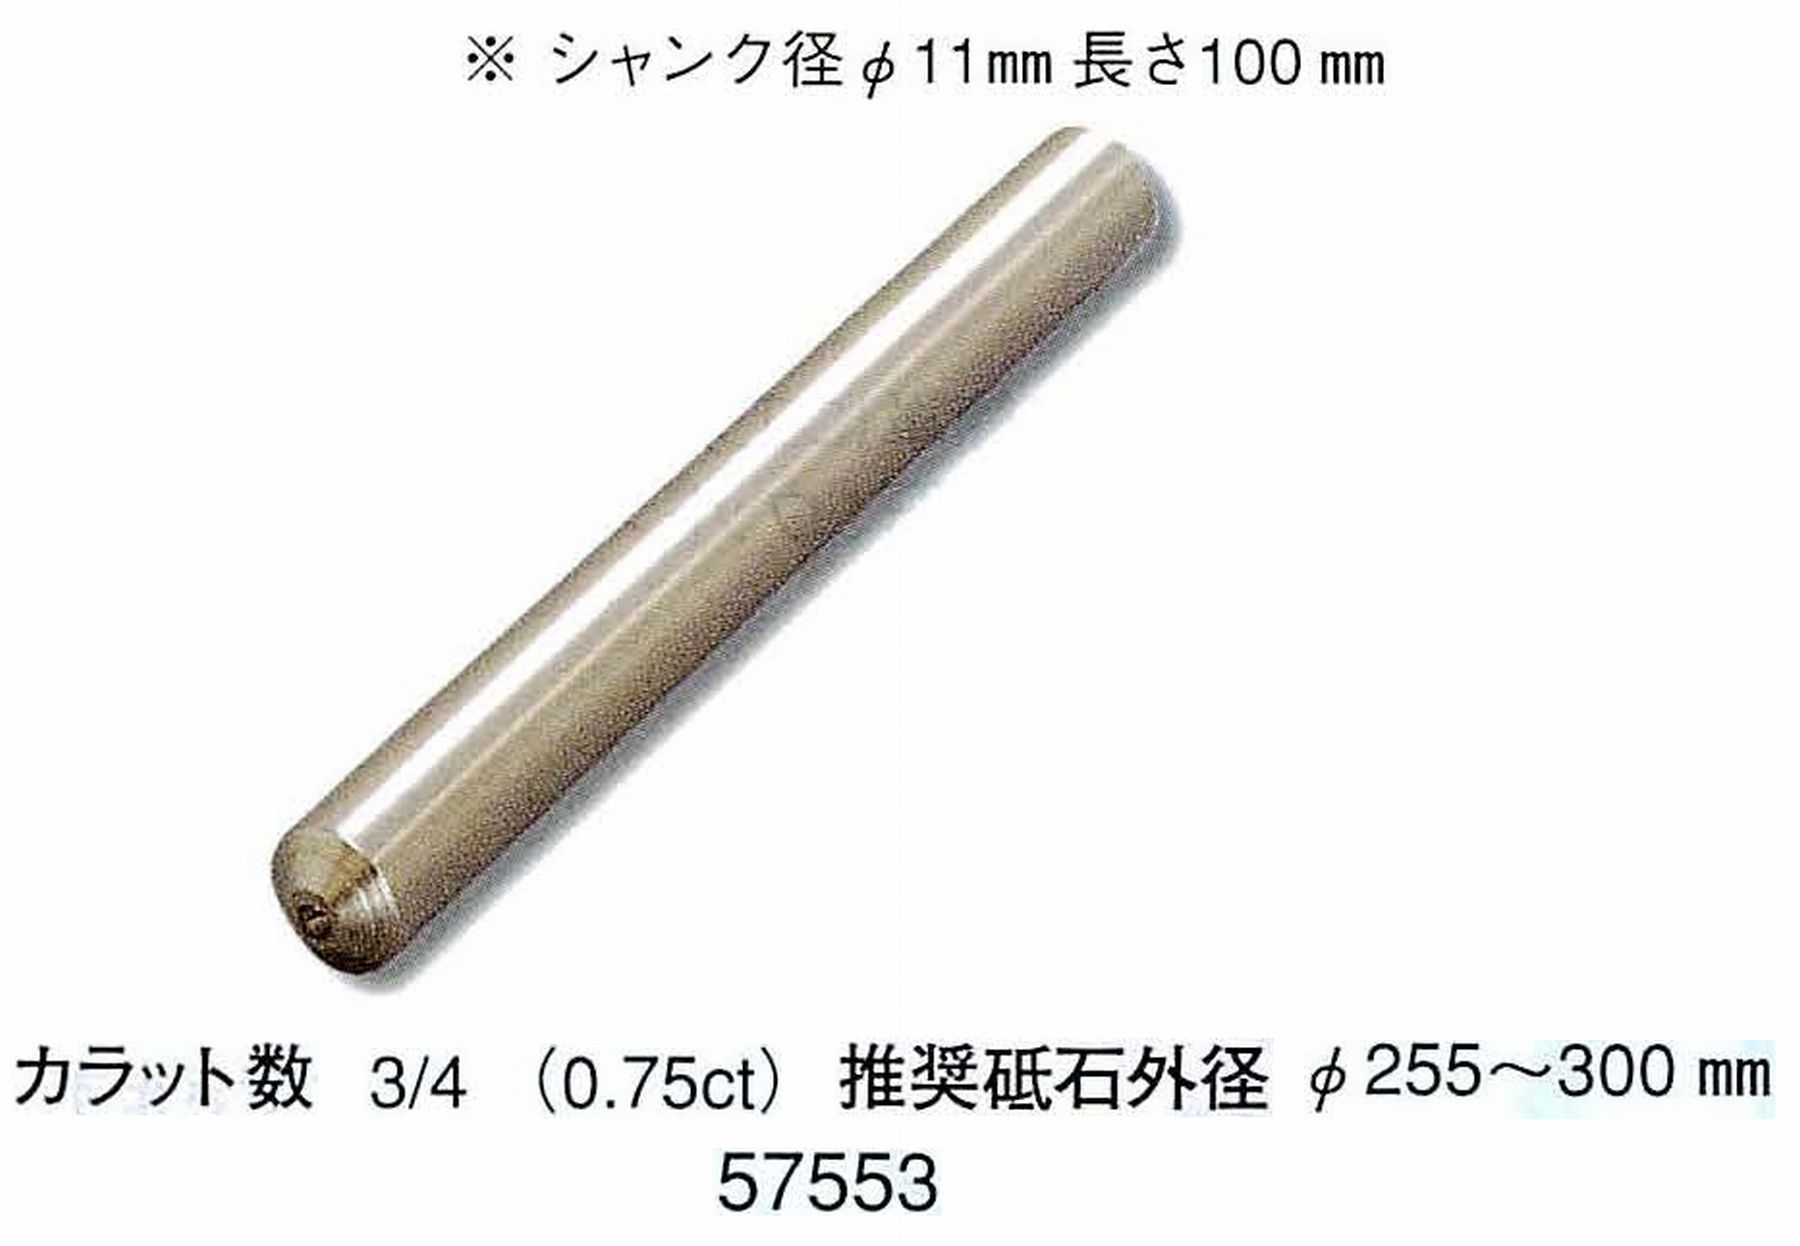 ナカニシ/NAKANISHI 天然ダイヤモンド 単石ドレッサ(シャンク径φ11mm 長さ100mm) 57553